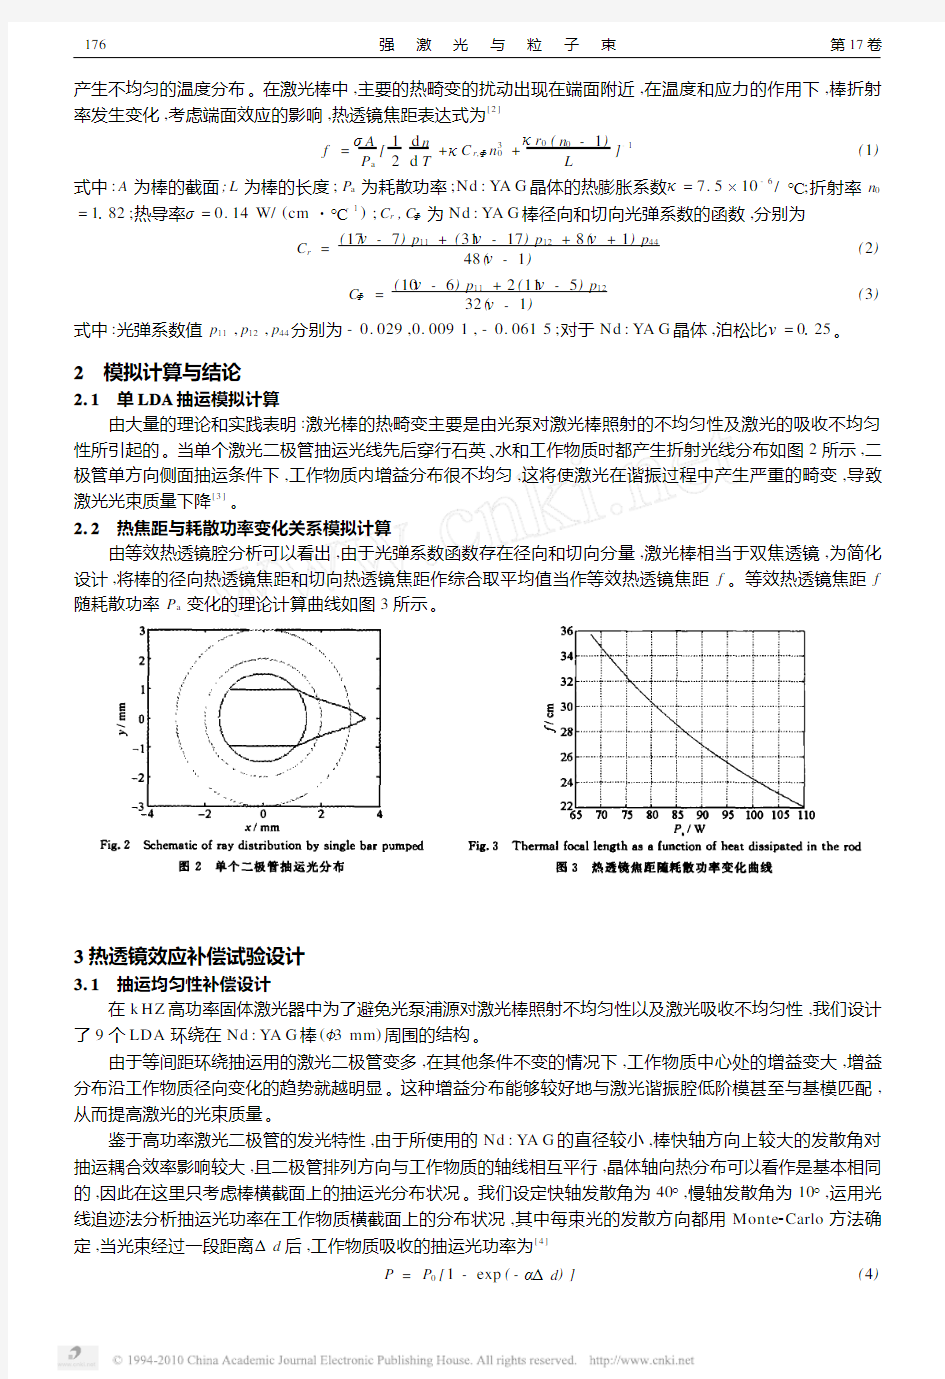 高功率高重复频率全固态激光器热透镜效应补偿与分析_马惠军 (1)